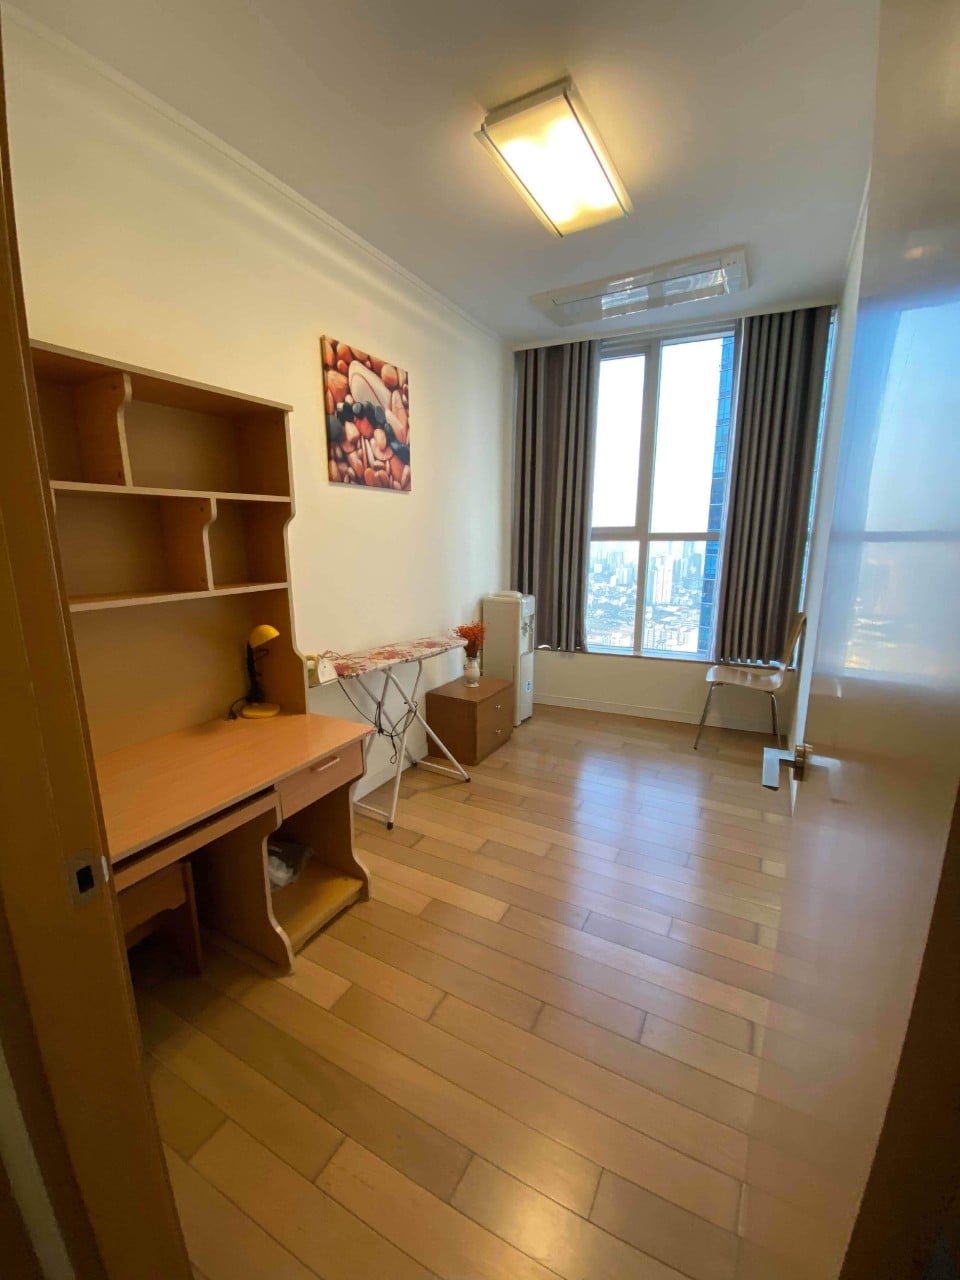 Cho thuê căn hộ 3 phòng ngủ chung cư Keangnam full nội thất cao cấp, vào ở được ngay (ảnh thật) 999910